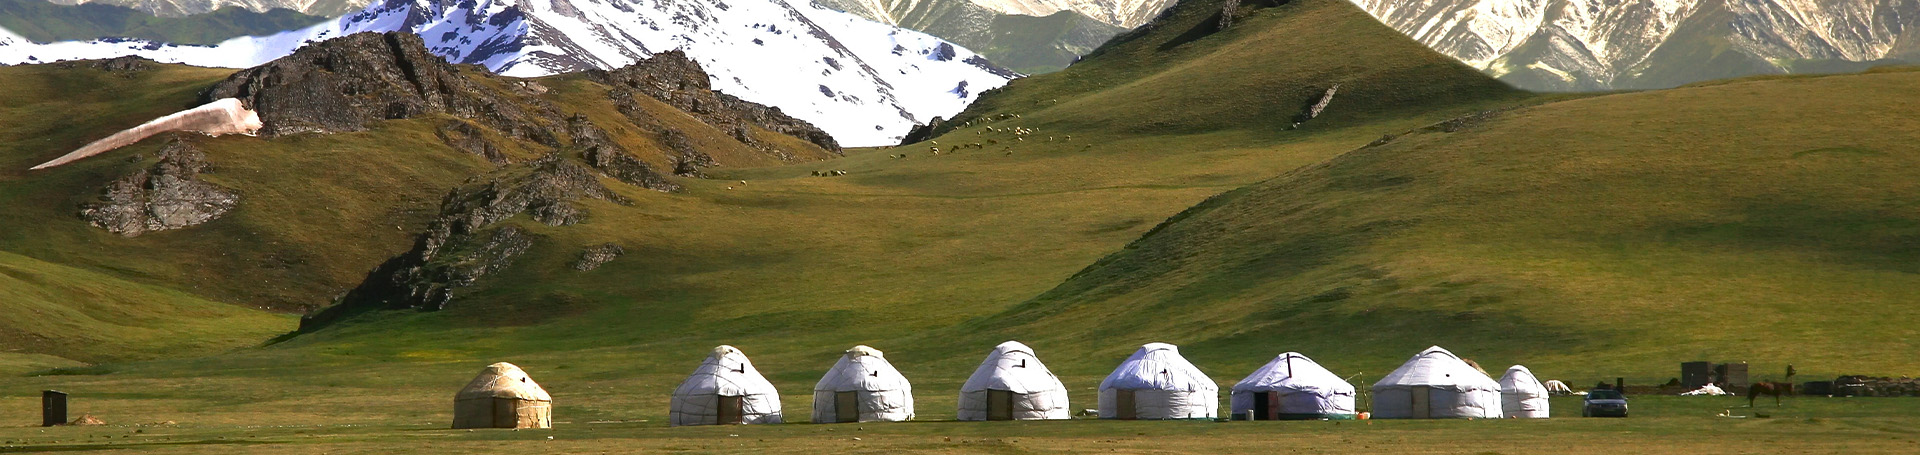 تور قرقیزستان 6 شب و 7 روز